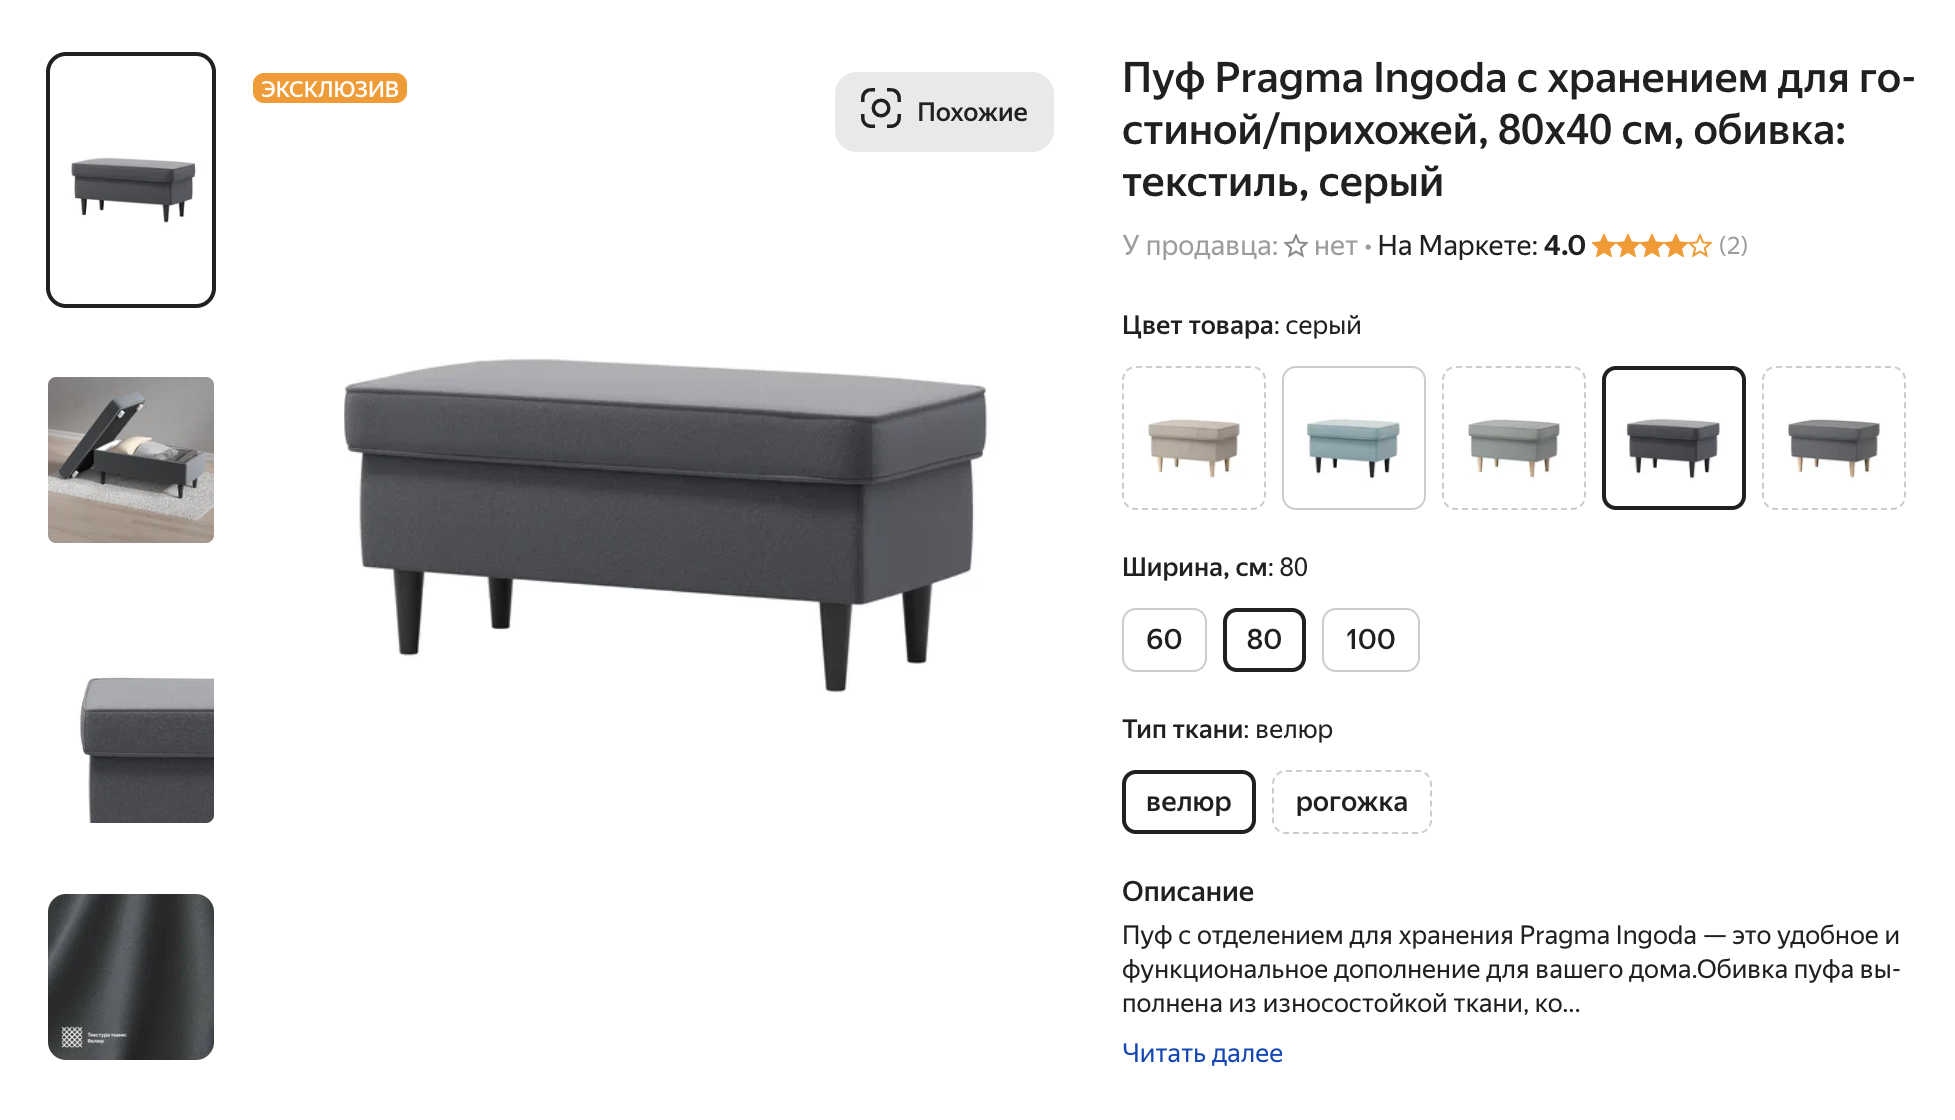 Примеры мебели Pragma. Источник: market.yandex.ru